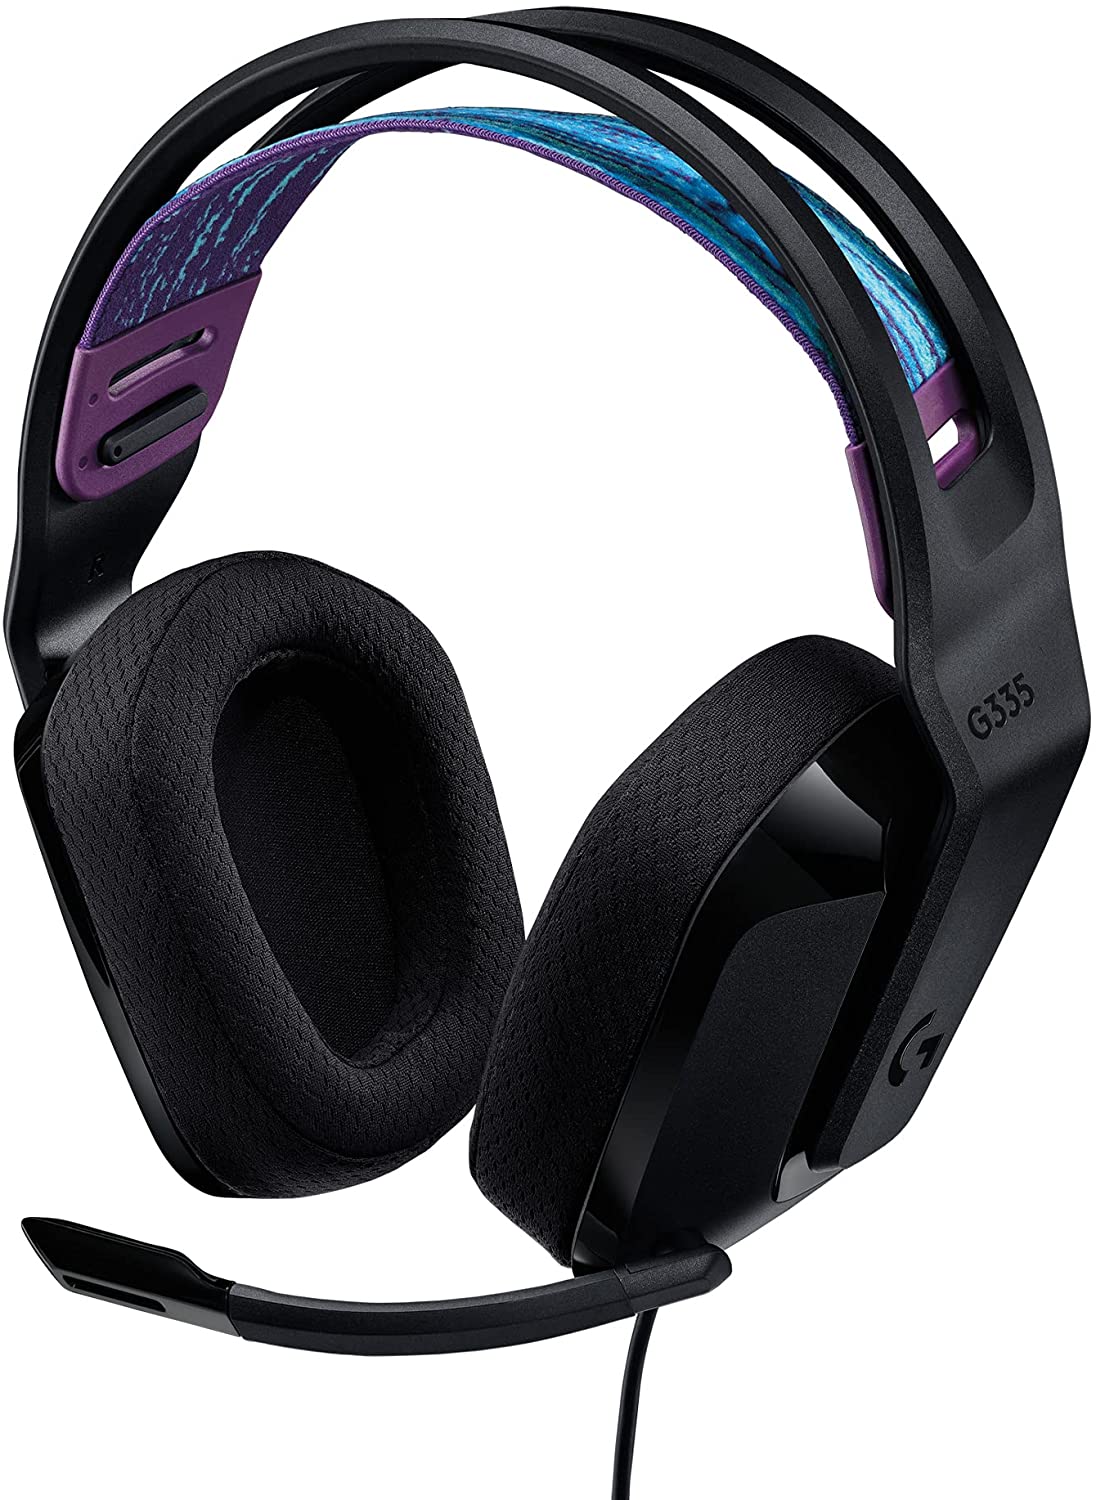 Logitech G335 Wired Gaming Headset - Black - Level UpLogitechPC5.10E+12